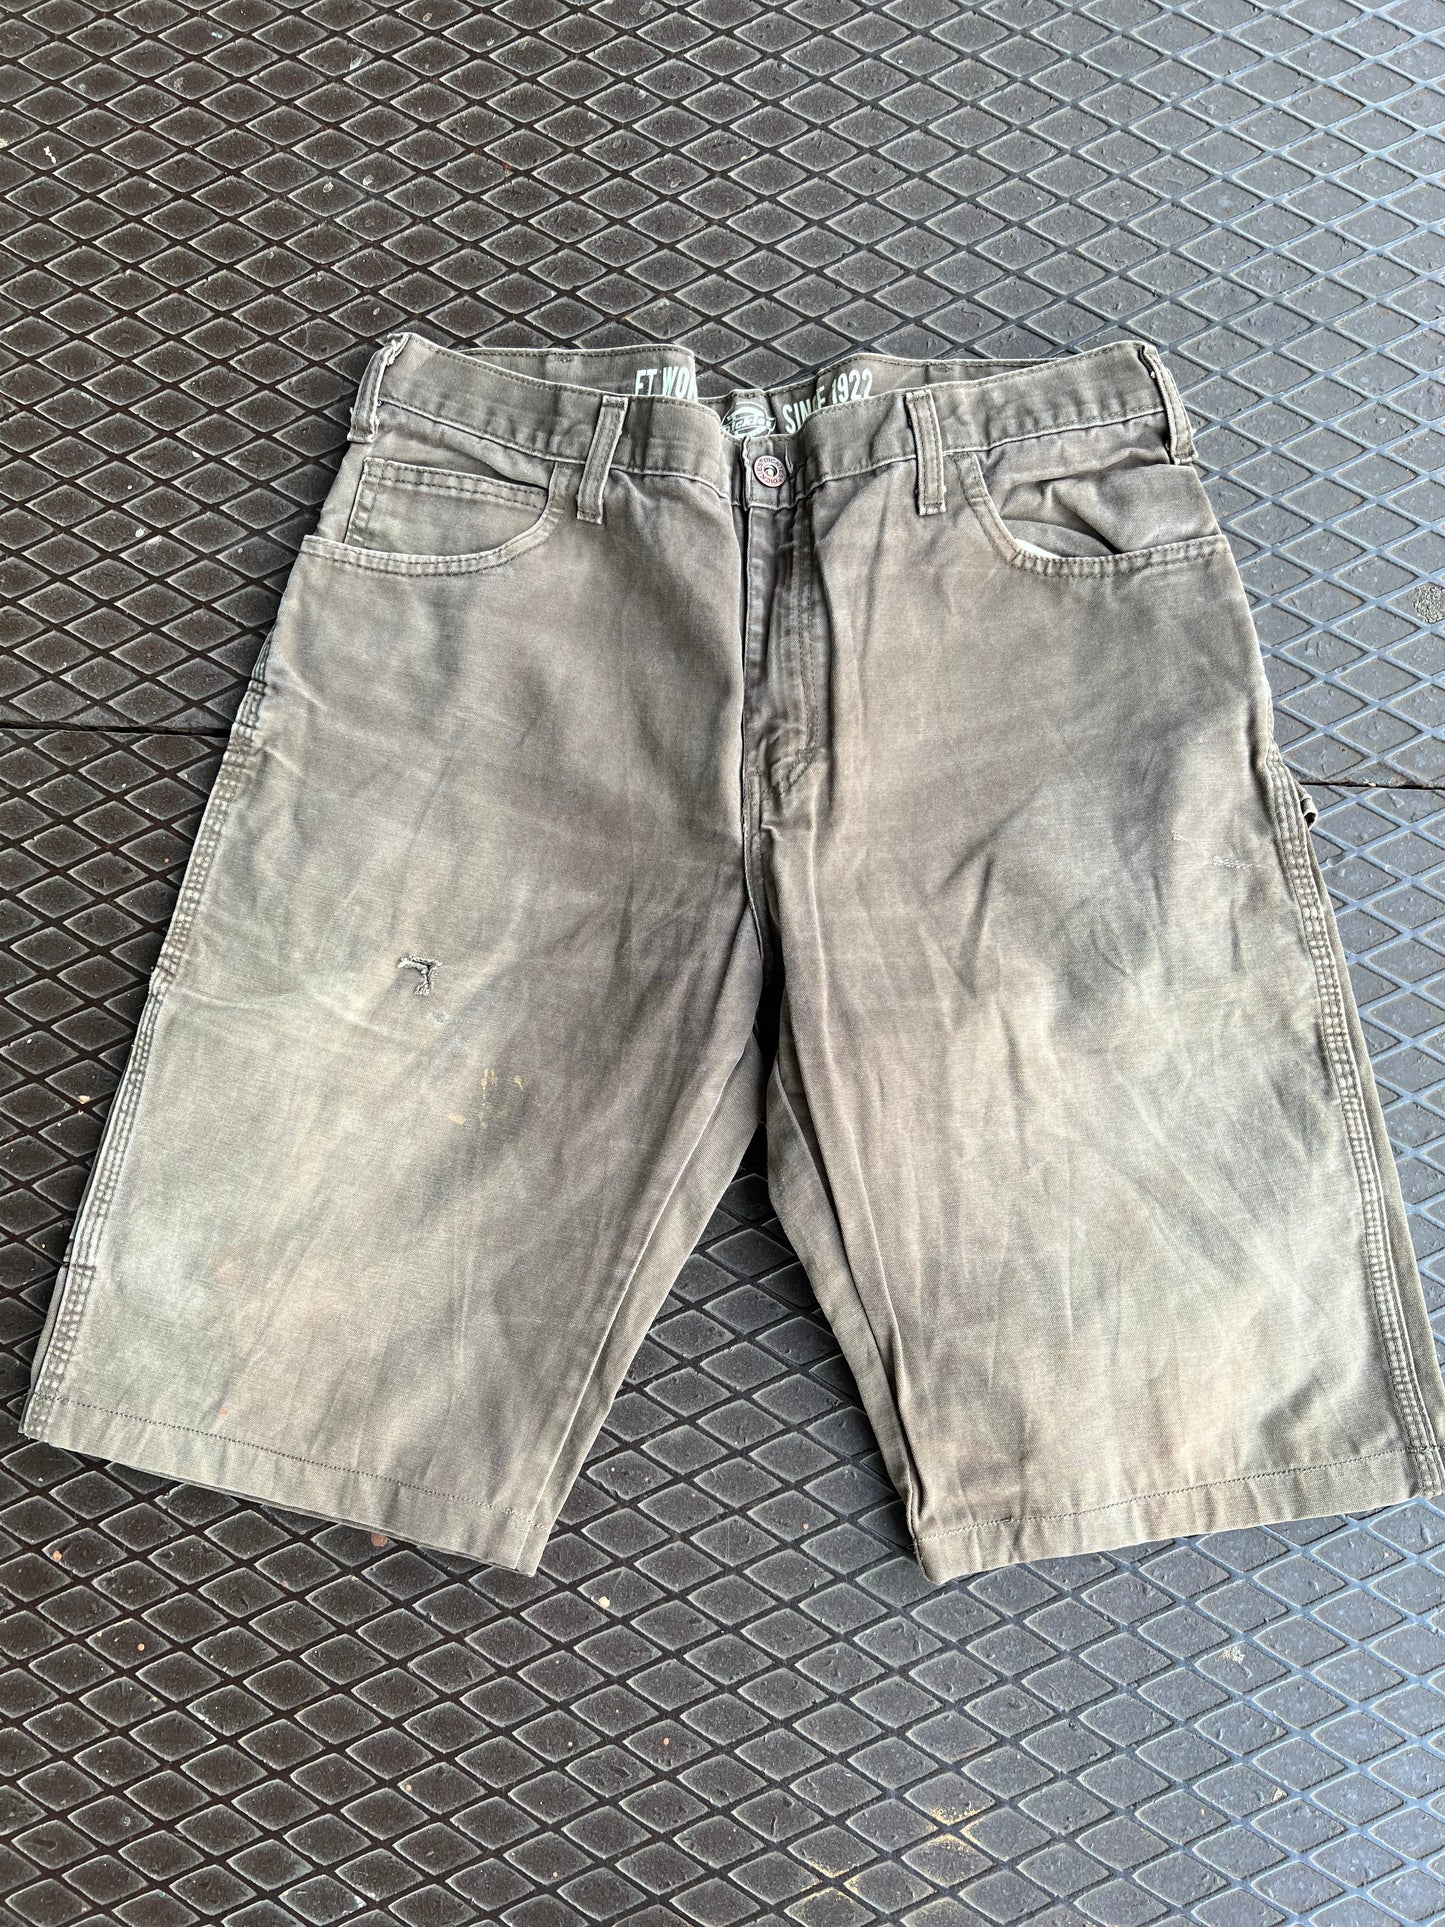 32 - Dickies Dark Brown/Grey Carpenter Shorts